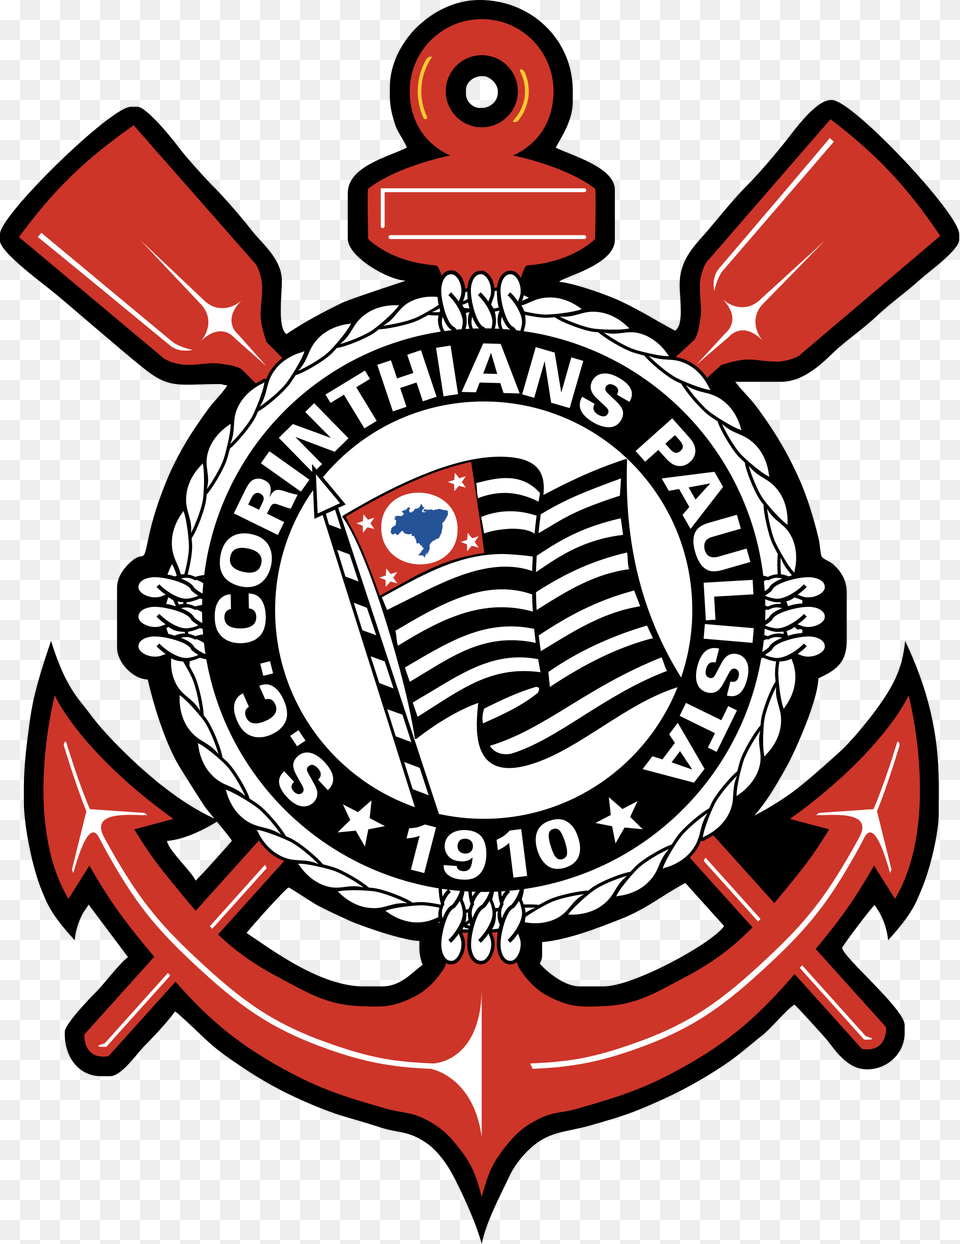 Escudo Do Corinthians Bordas Dream League Soccer Logo Do Corinthians, Electronics, Emblem, Hardware, Symbol Free Png